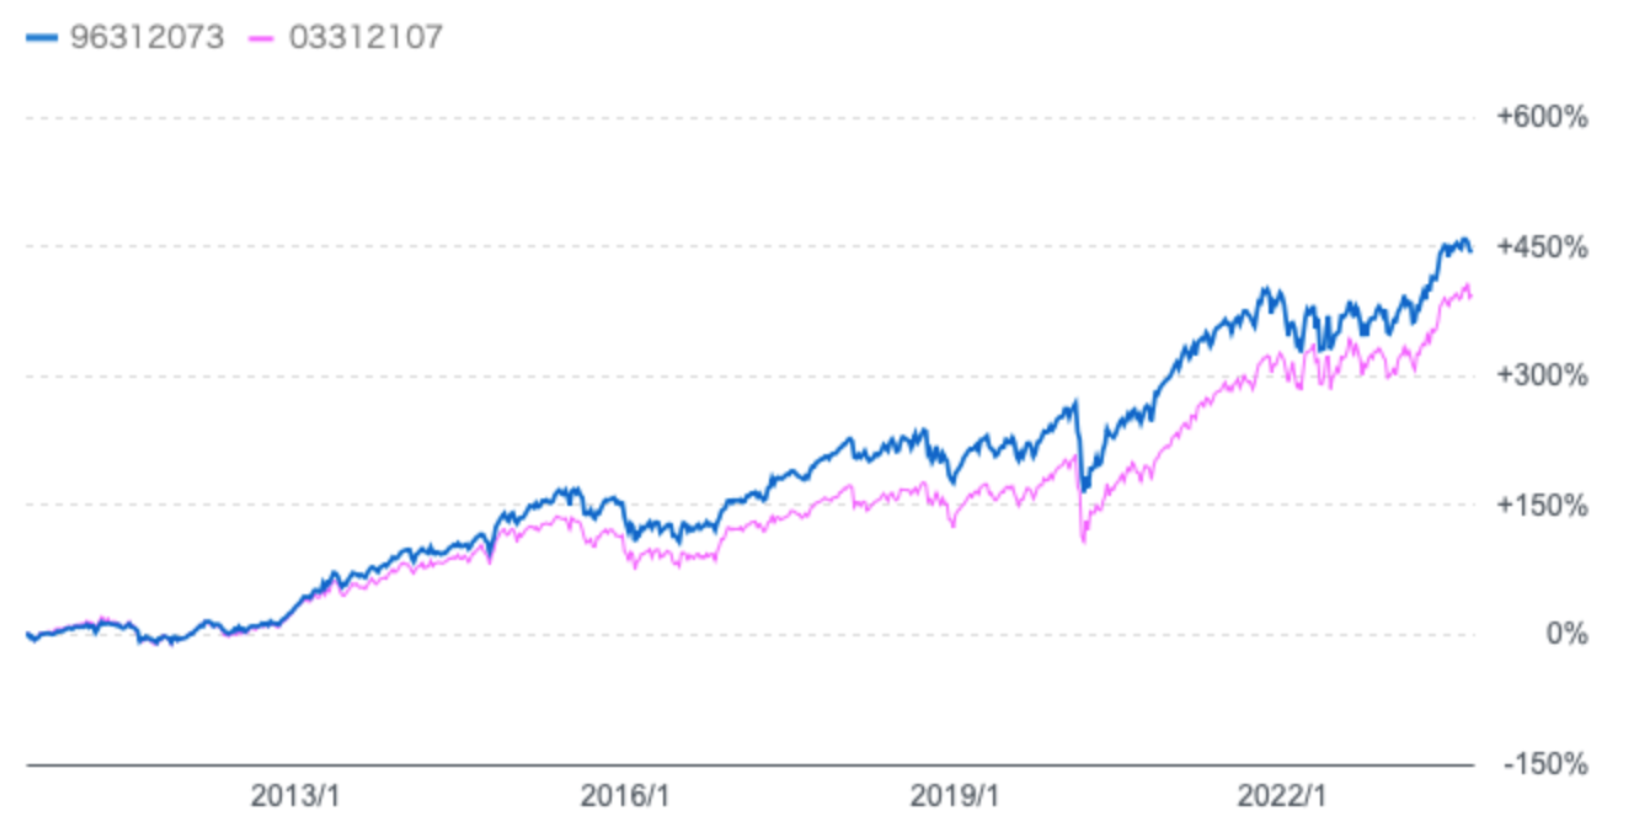 セゾン資産形成の達人ファンドと全世界株式(円建て)の比較